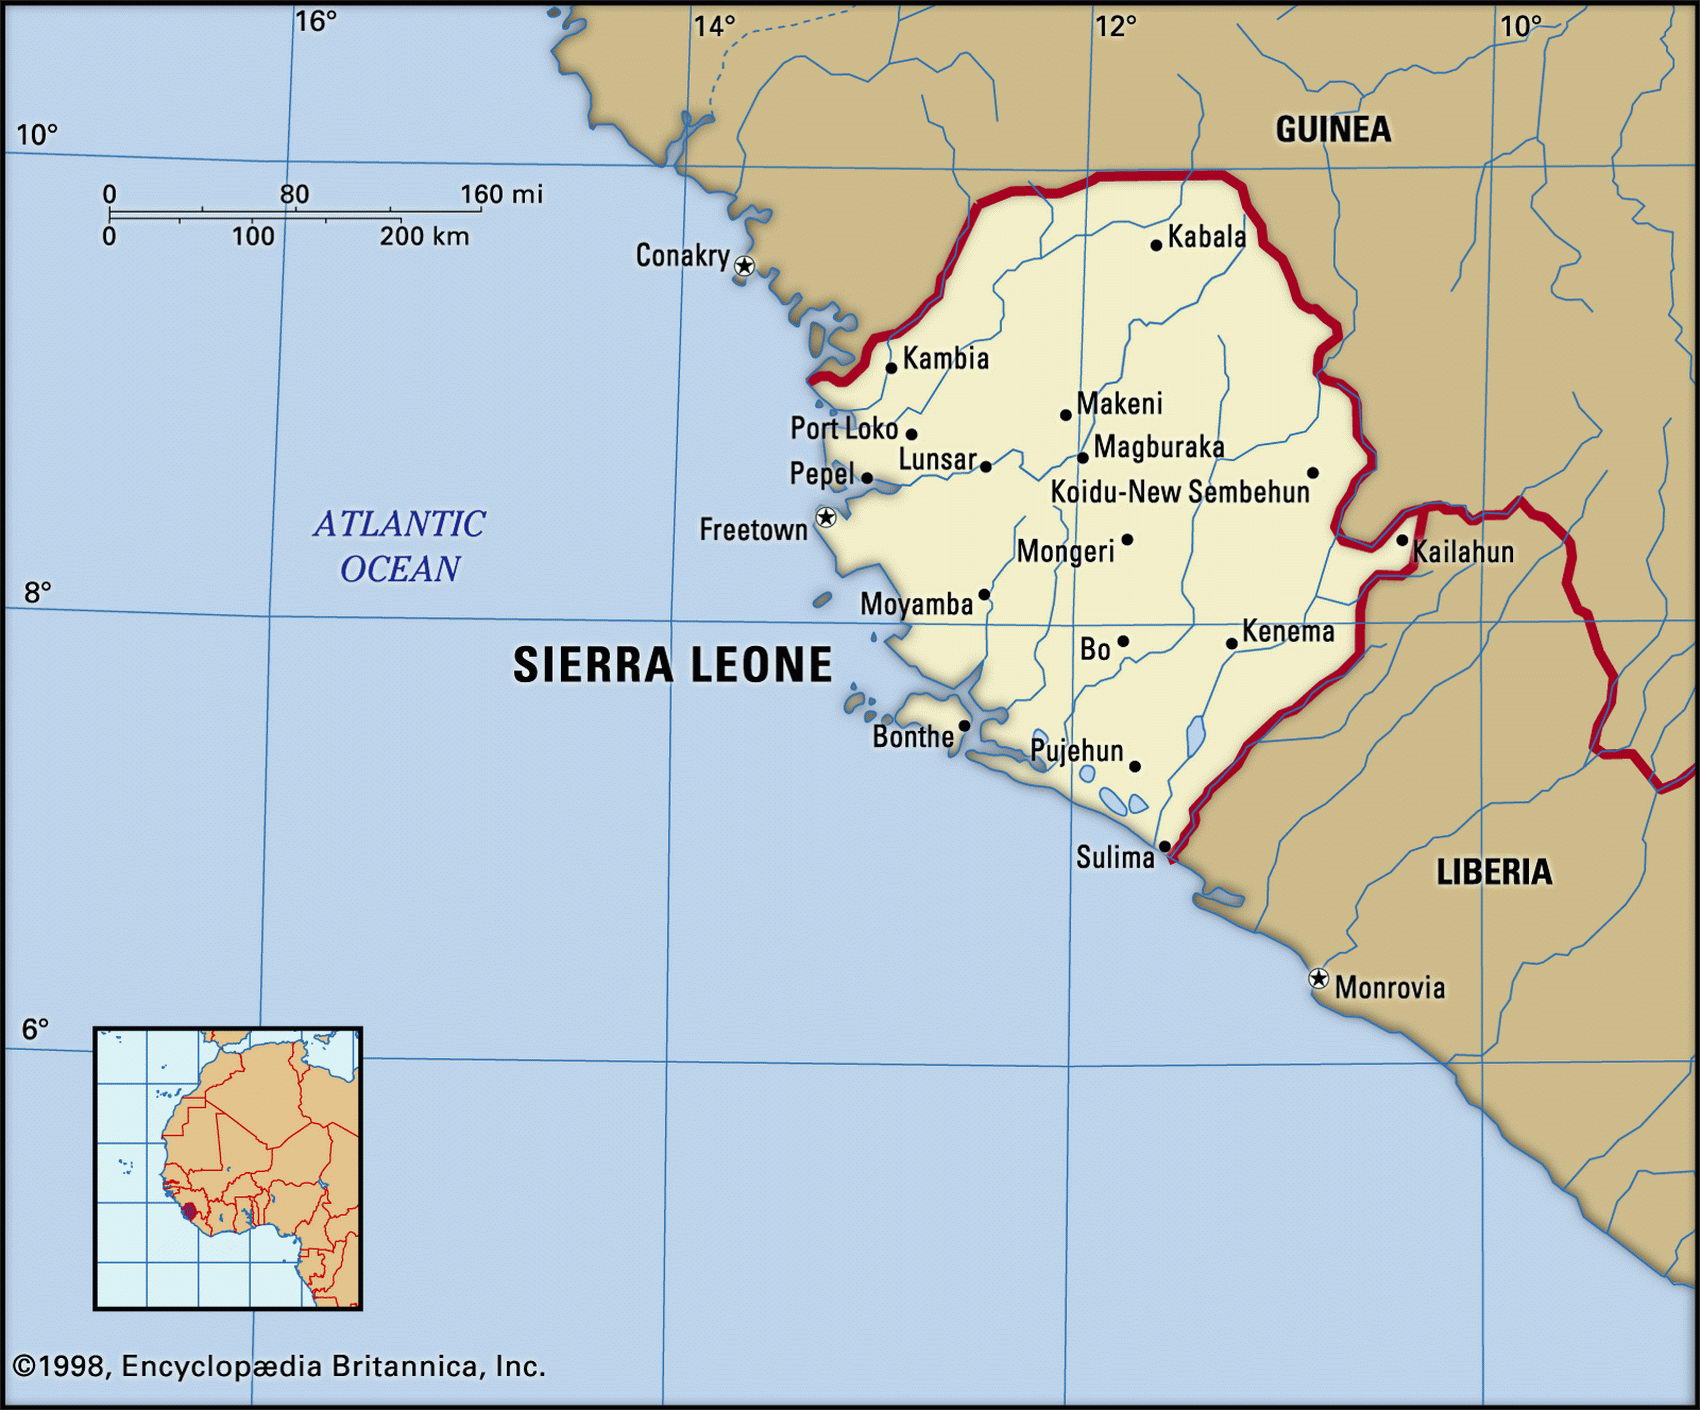 https://east-usa.com/world/images/Sierra-Leone.jpg